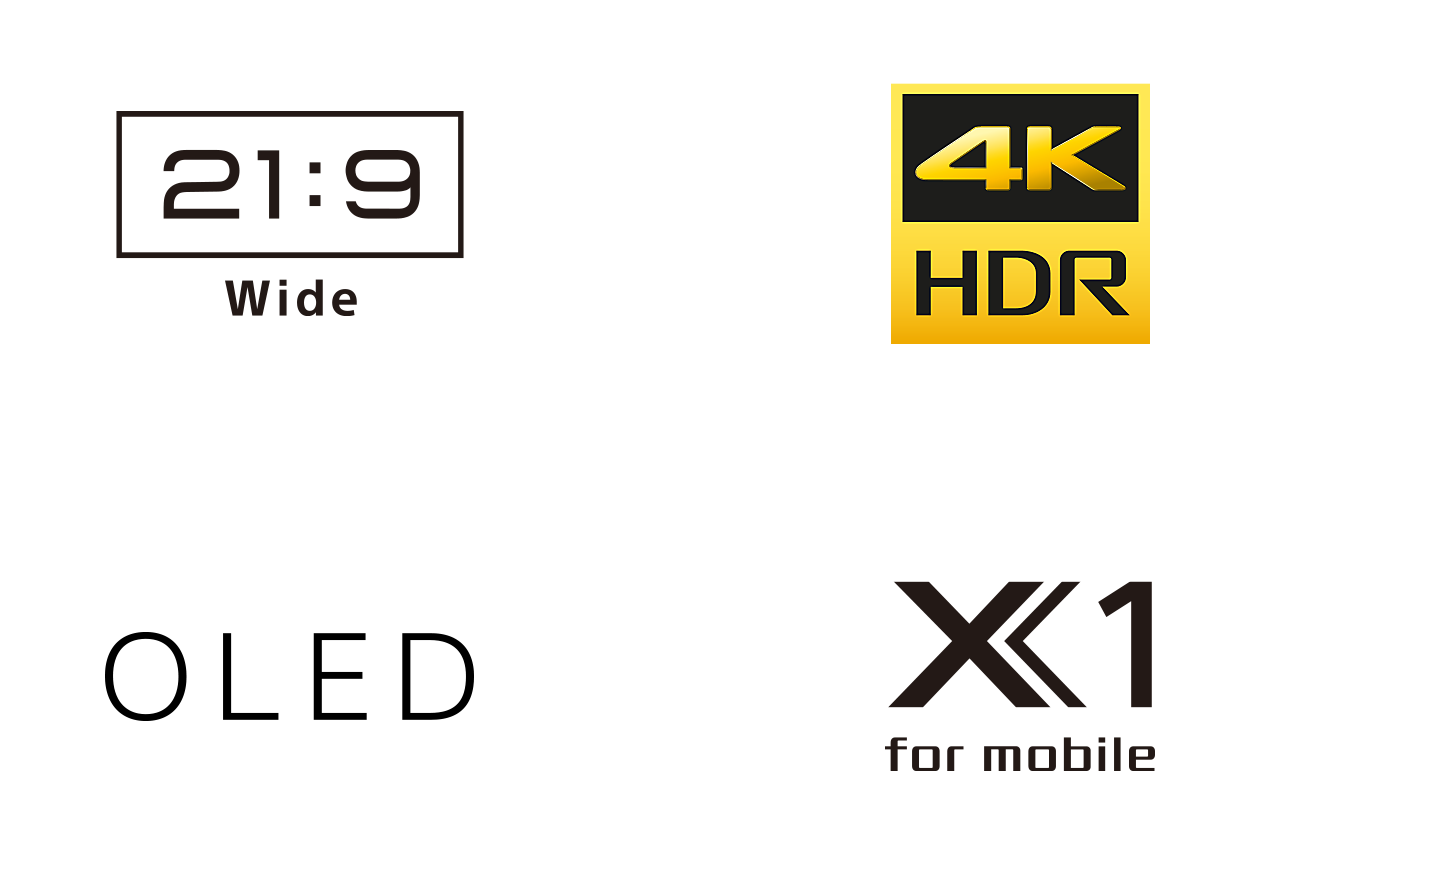 Logotipi za 21:9 širok zaslon, 4K HDR, OLED in X1 za mobilne naprave